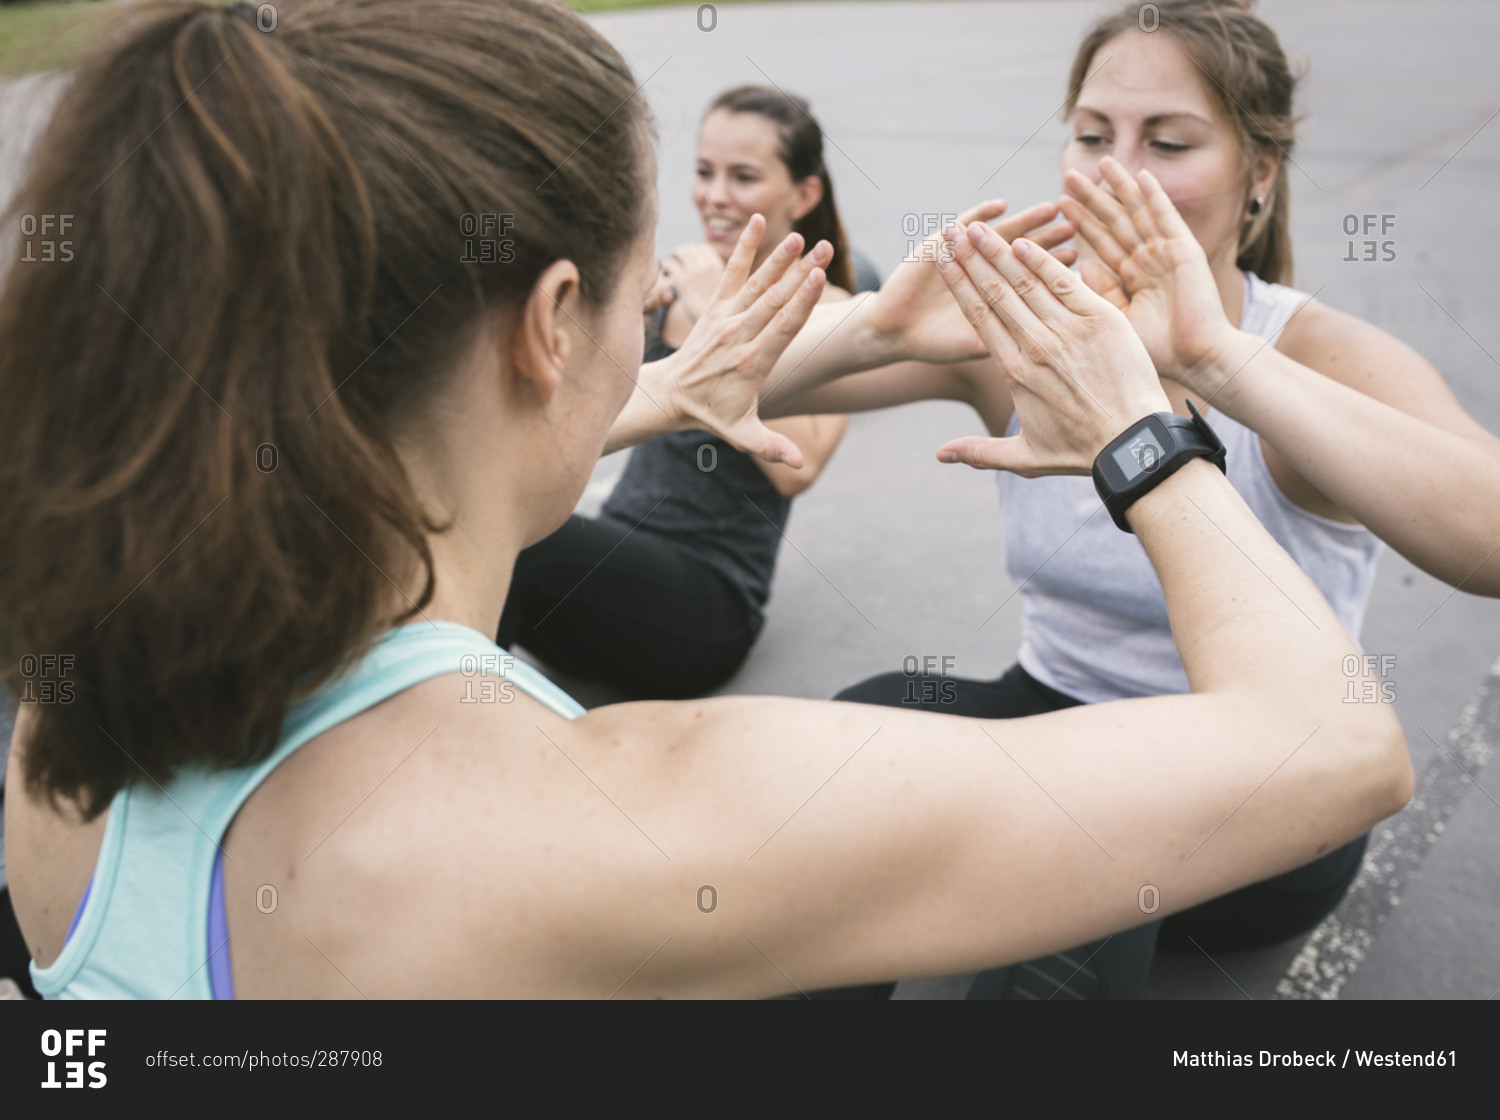 Women having an outdoor boot camp workout